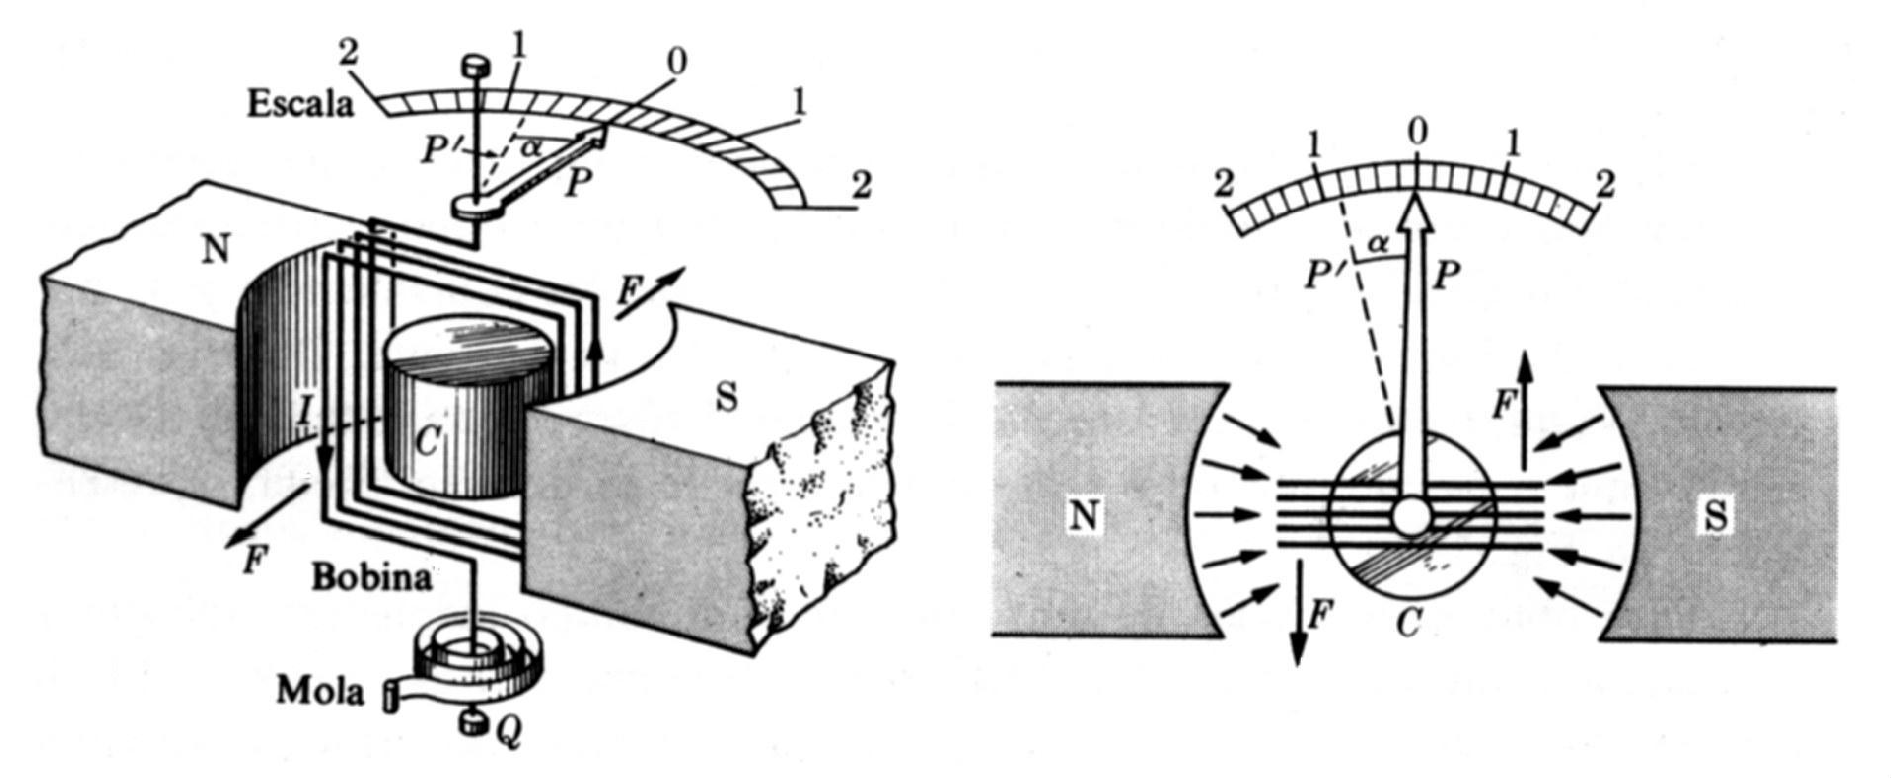 OBJETIVOS Compreender o funcionamento do voltímetro e do amperímetro. Utilizar o voltímetro e o amperímetro para medições em circuitos simples de corrente contínua.